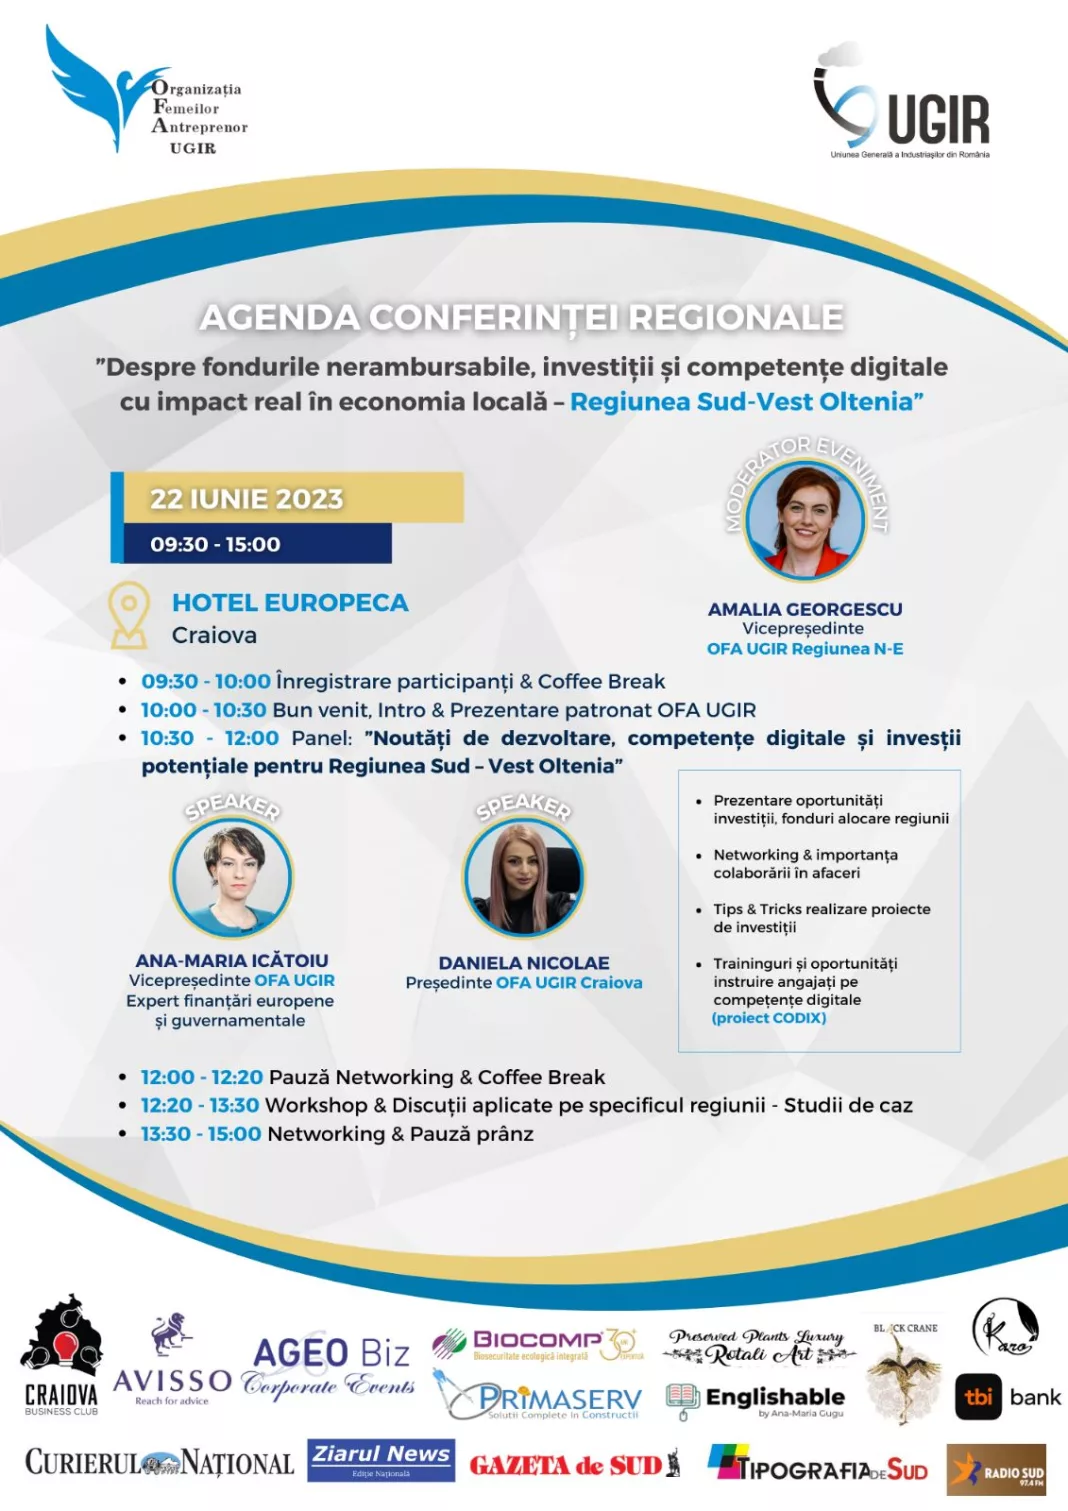 Organizaţia Femeilor Antreprenor din cadrul UGIR, dezbatere de interes major pentru regiunea Sud-Vest Oltenia